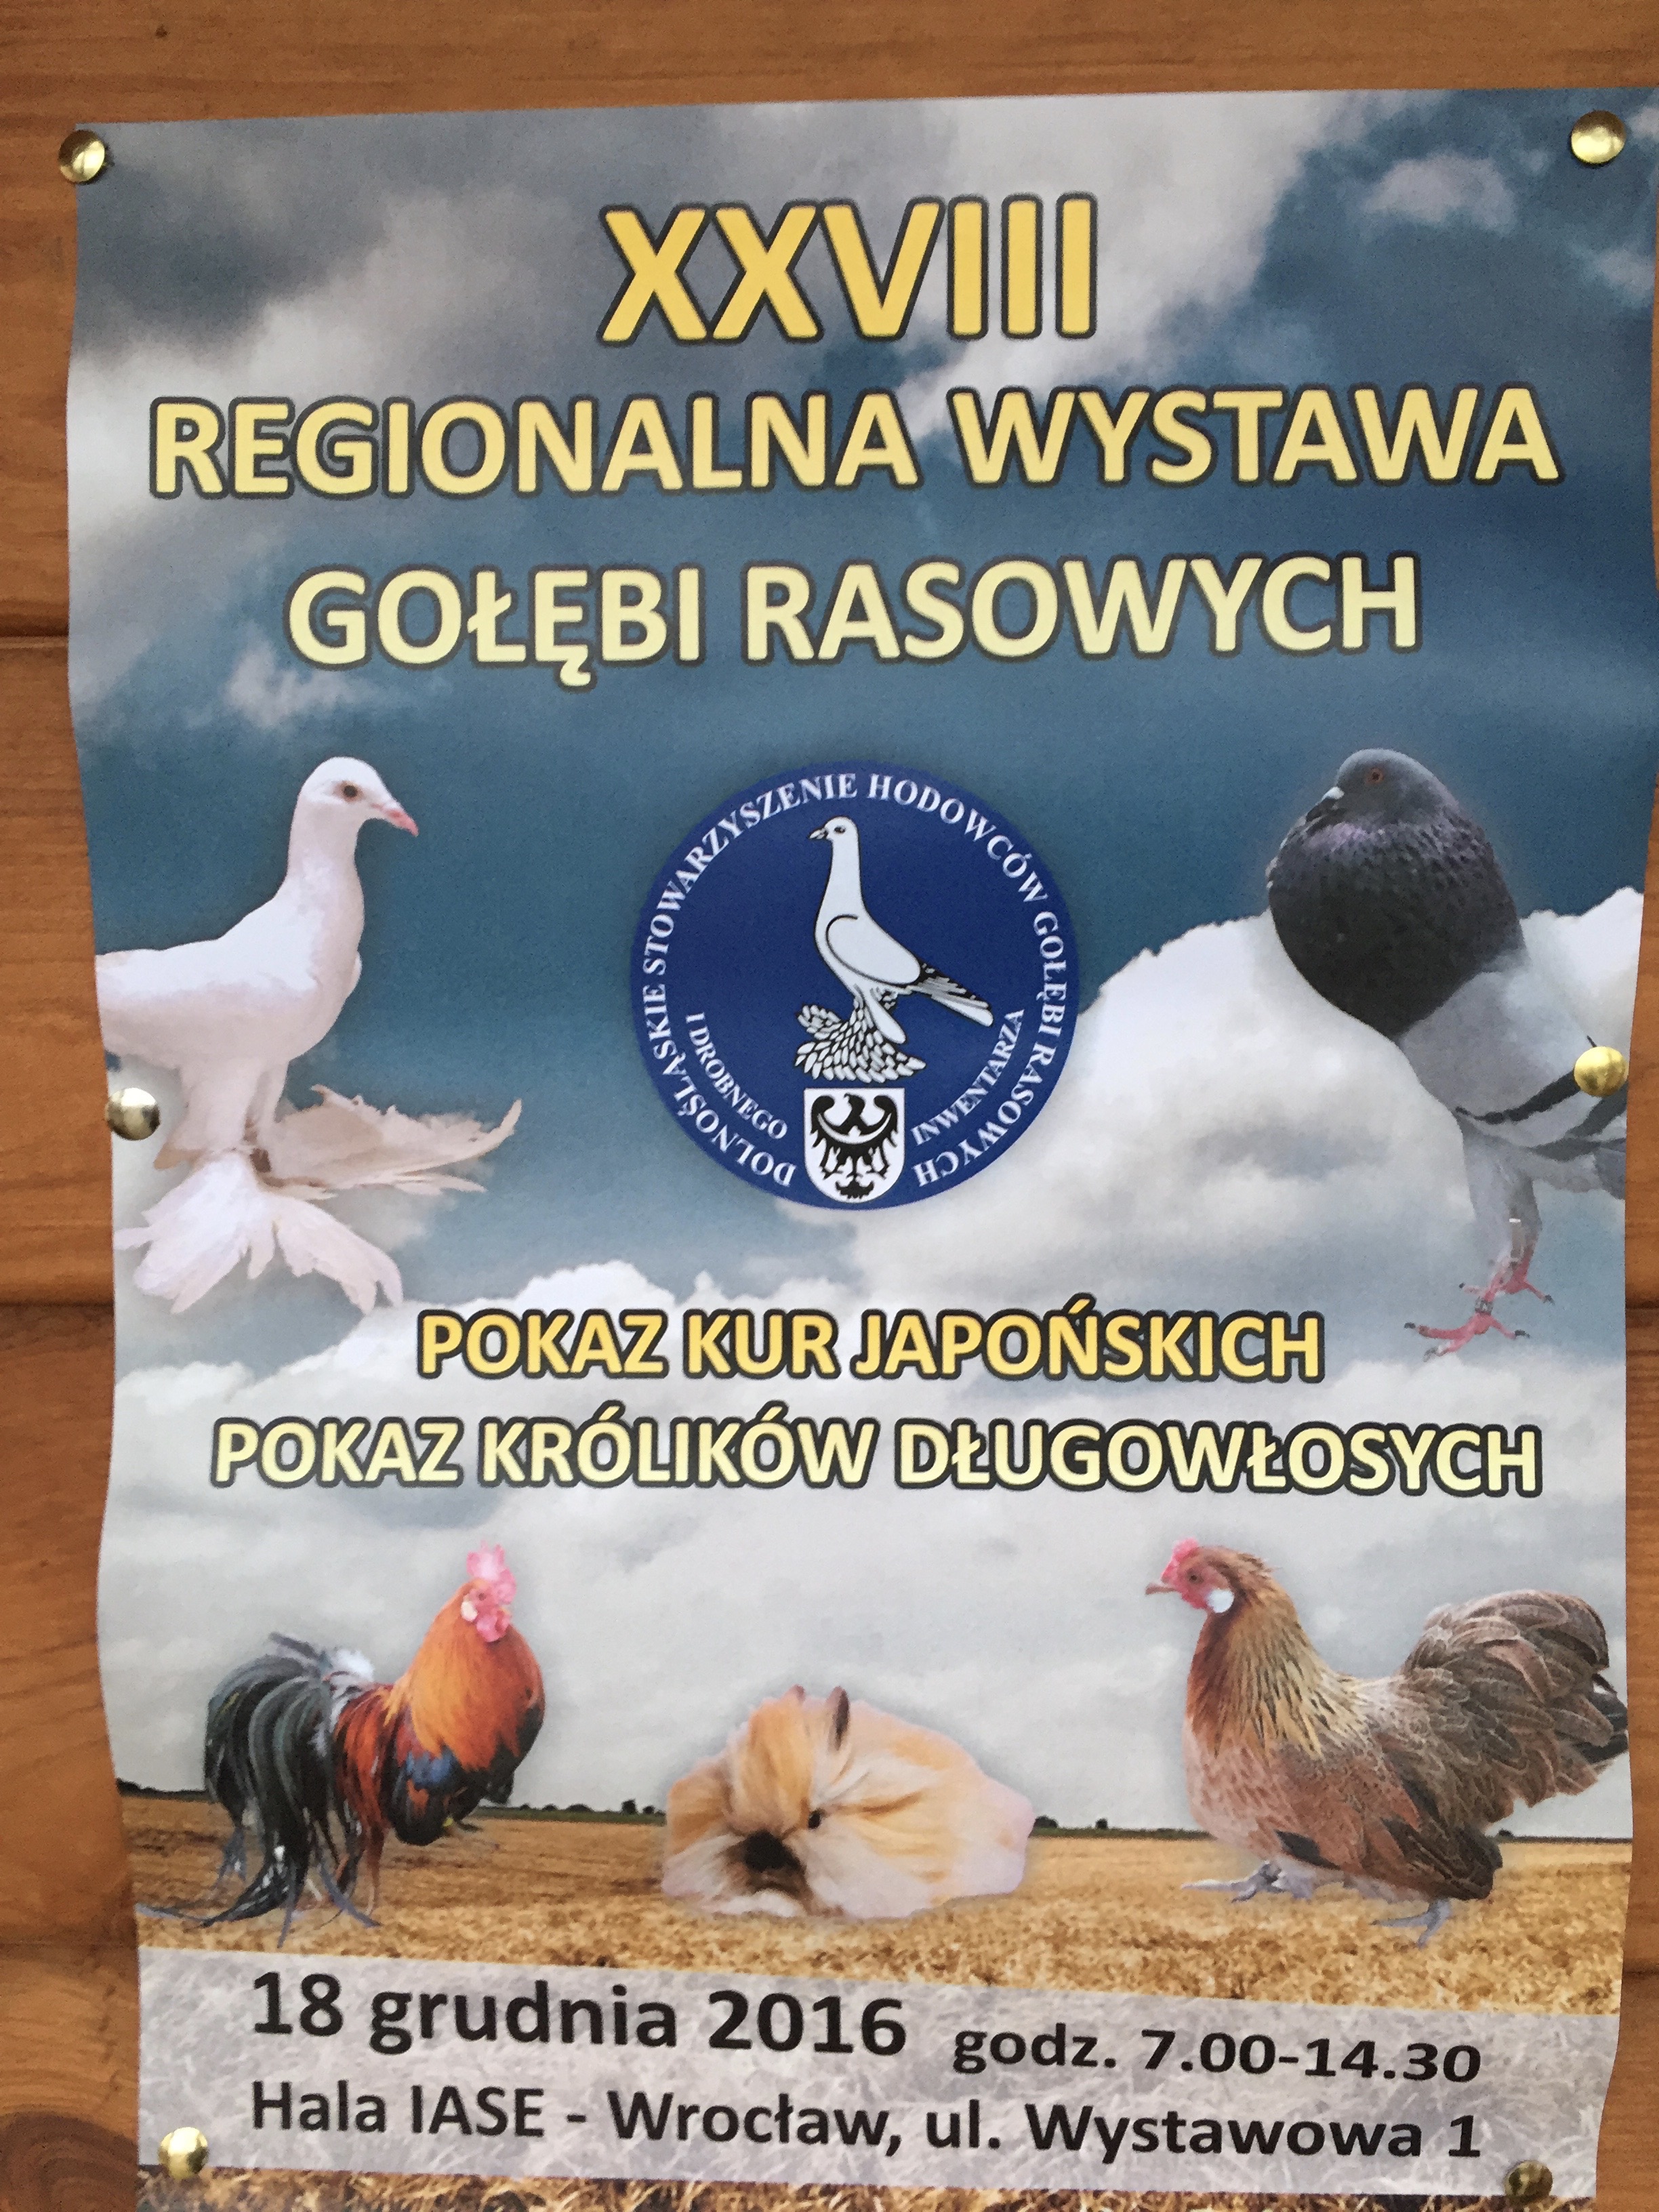 XXVIII Regionalna Wystawa Gołębi Rasowych 2016 Wrocław